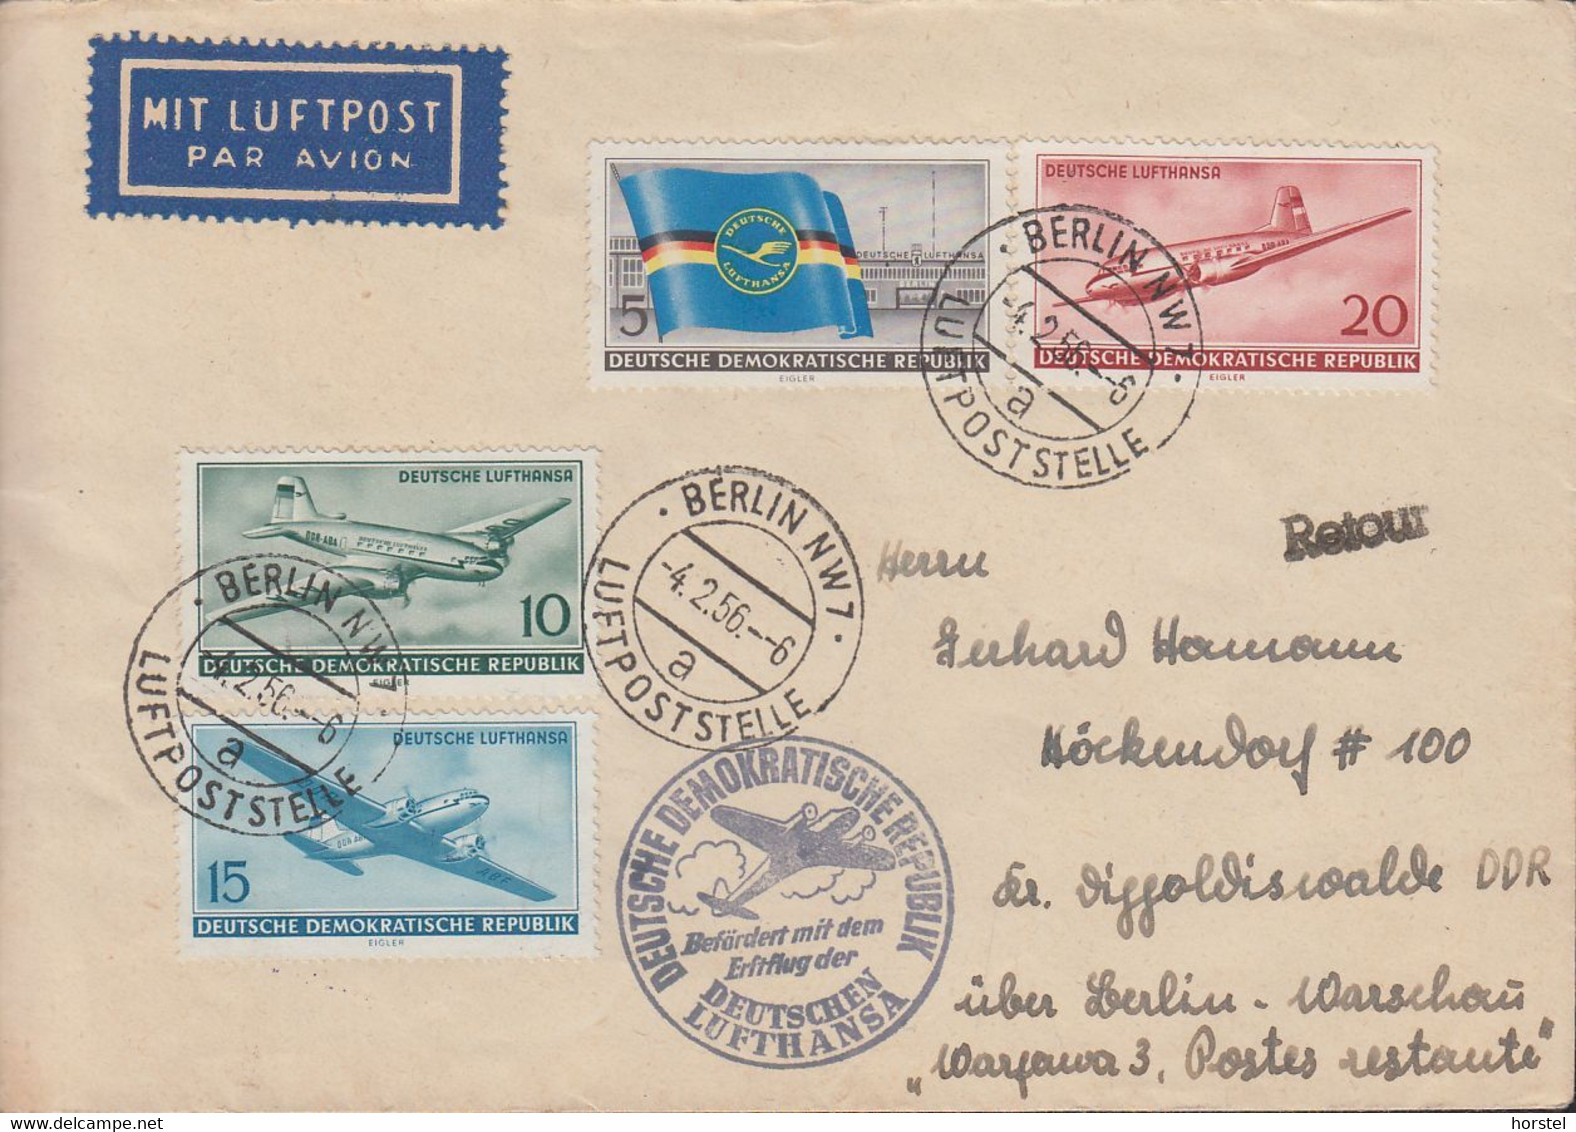 DDR - Mi. 512-515 Eröffnung Des Zivilen Luftverkehrs In Der DDR - Luftpostbrief ( Gelaufen Am 4.2.1956) - Airmail